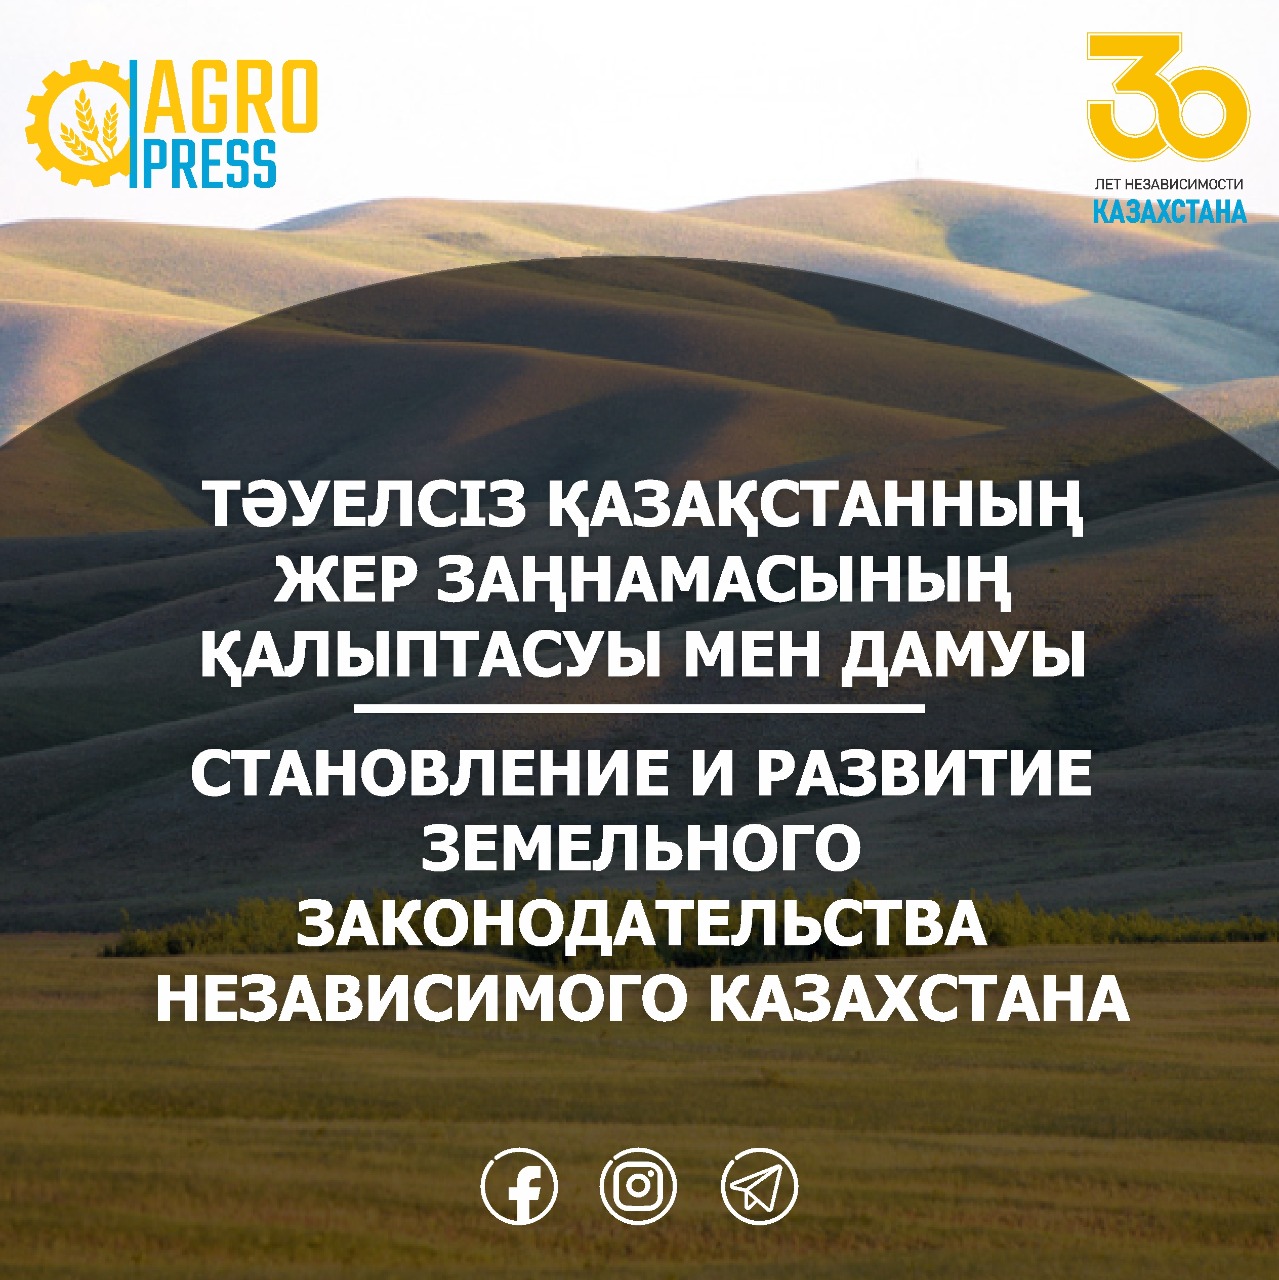 Становление и развитие земельного законодательства  Независимого Казахстана